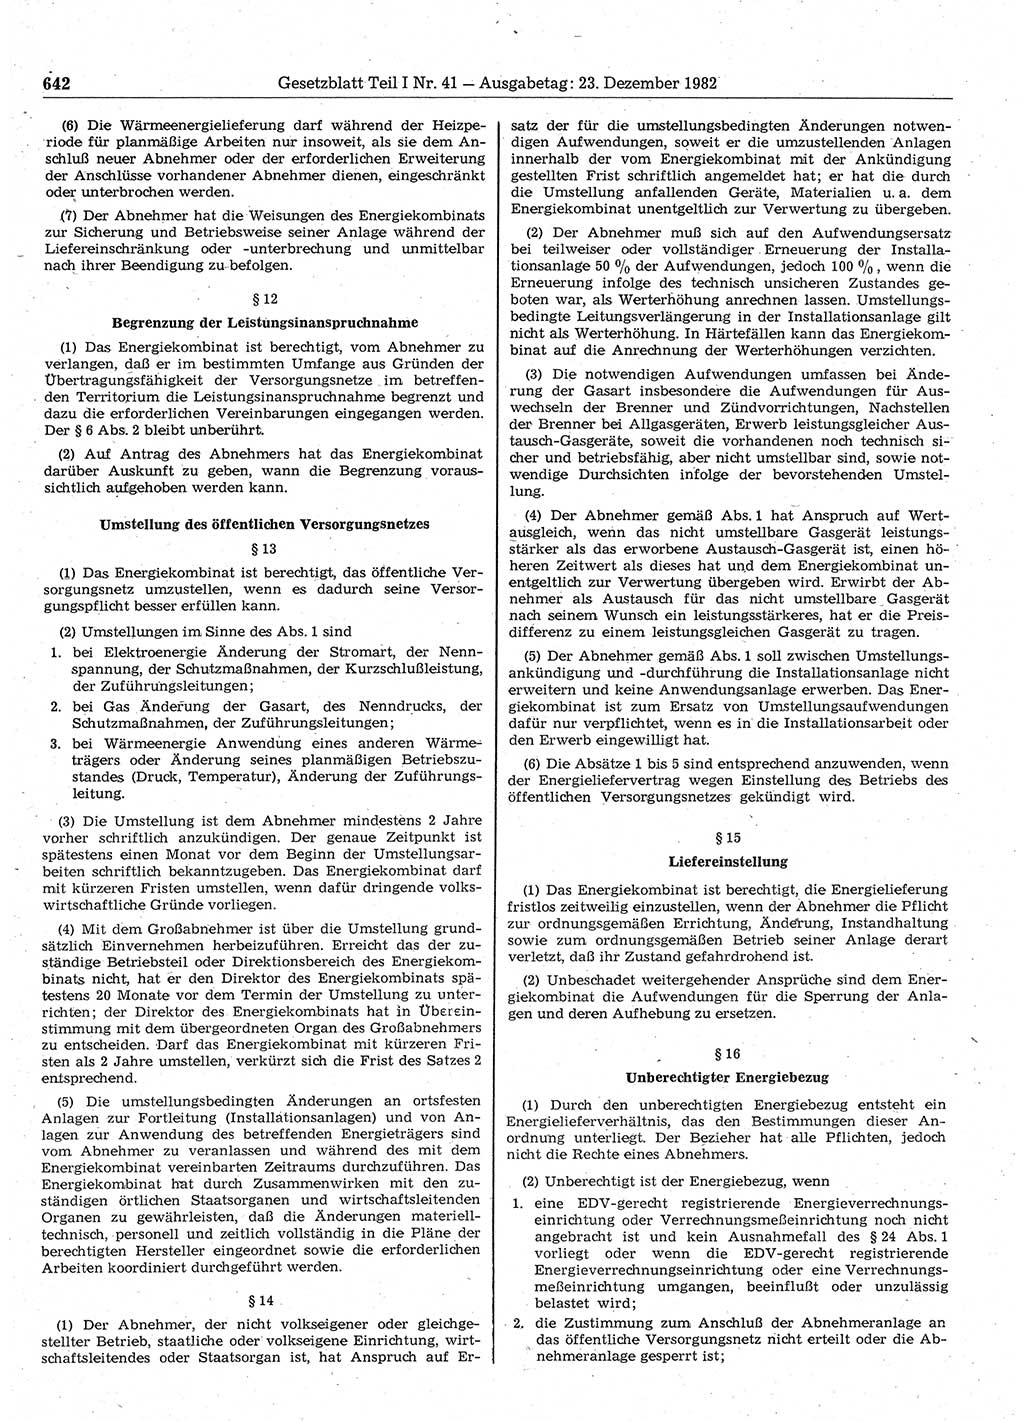 Gesetzblatt (GBl.) der Deutschen Demokratischen Republik (DDR) Teil Ⅰ 1982, Seite 642 (GBl. DDR Ⅰ 1982, S. 642)